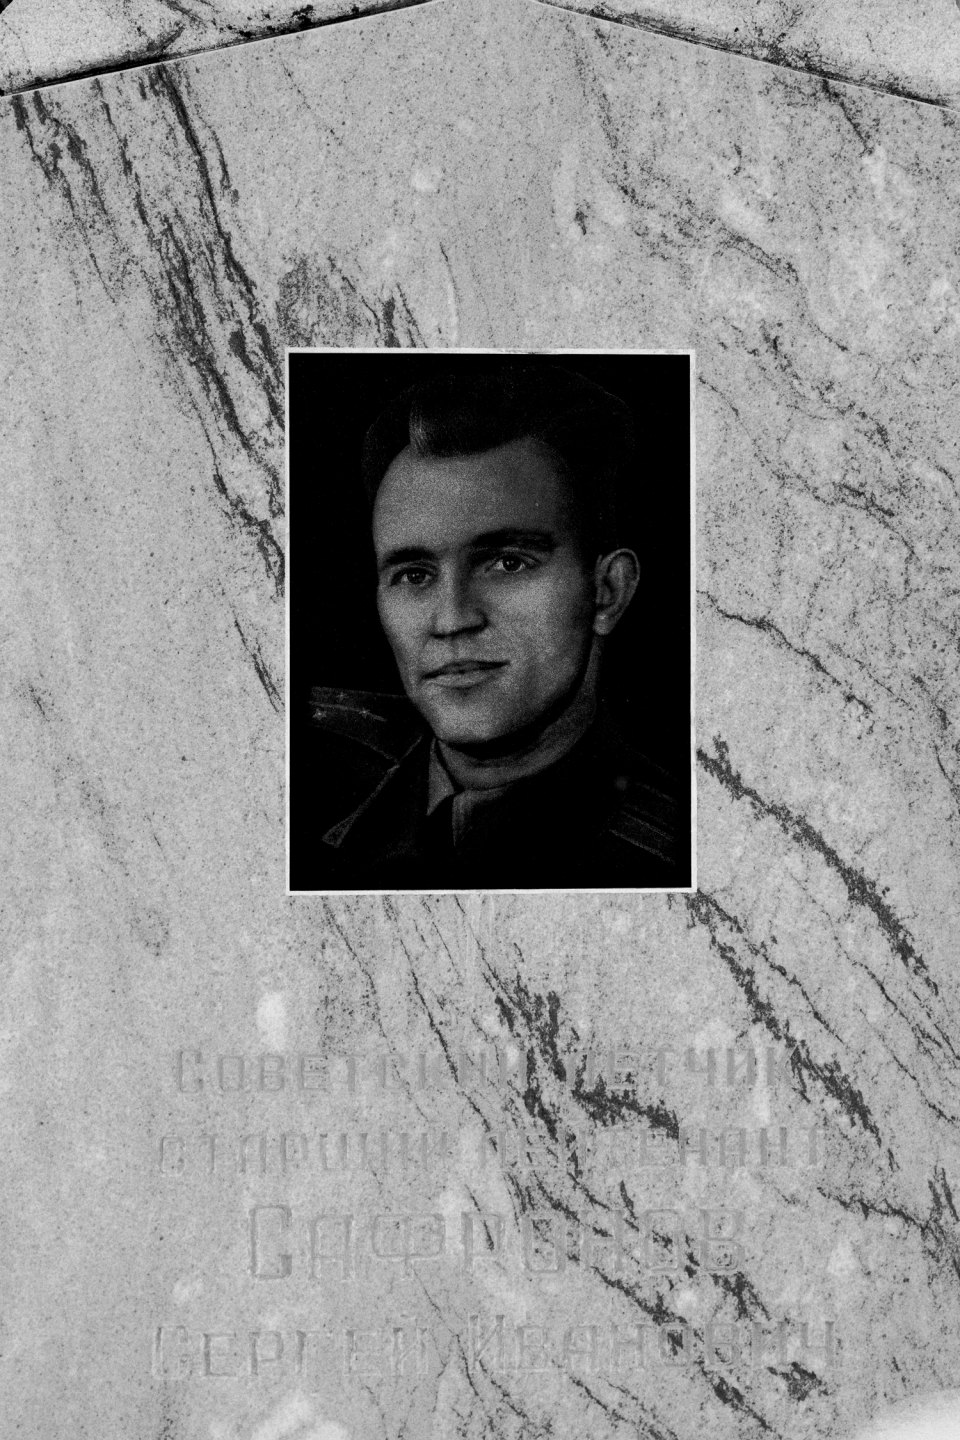 Il monumento al pilota sovietico Sergei Safronov, accidentalmente abbattuto durante l’operazione contro l’aereo spia